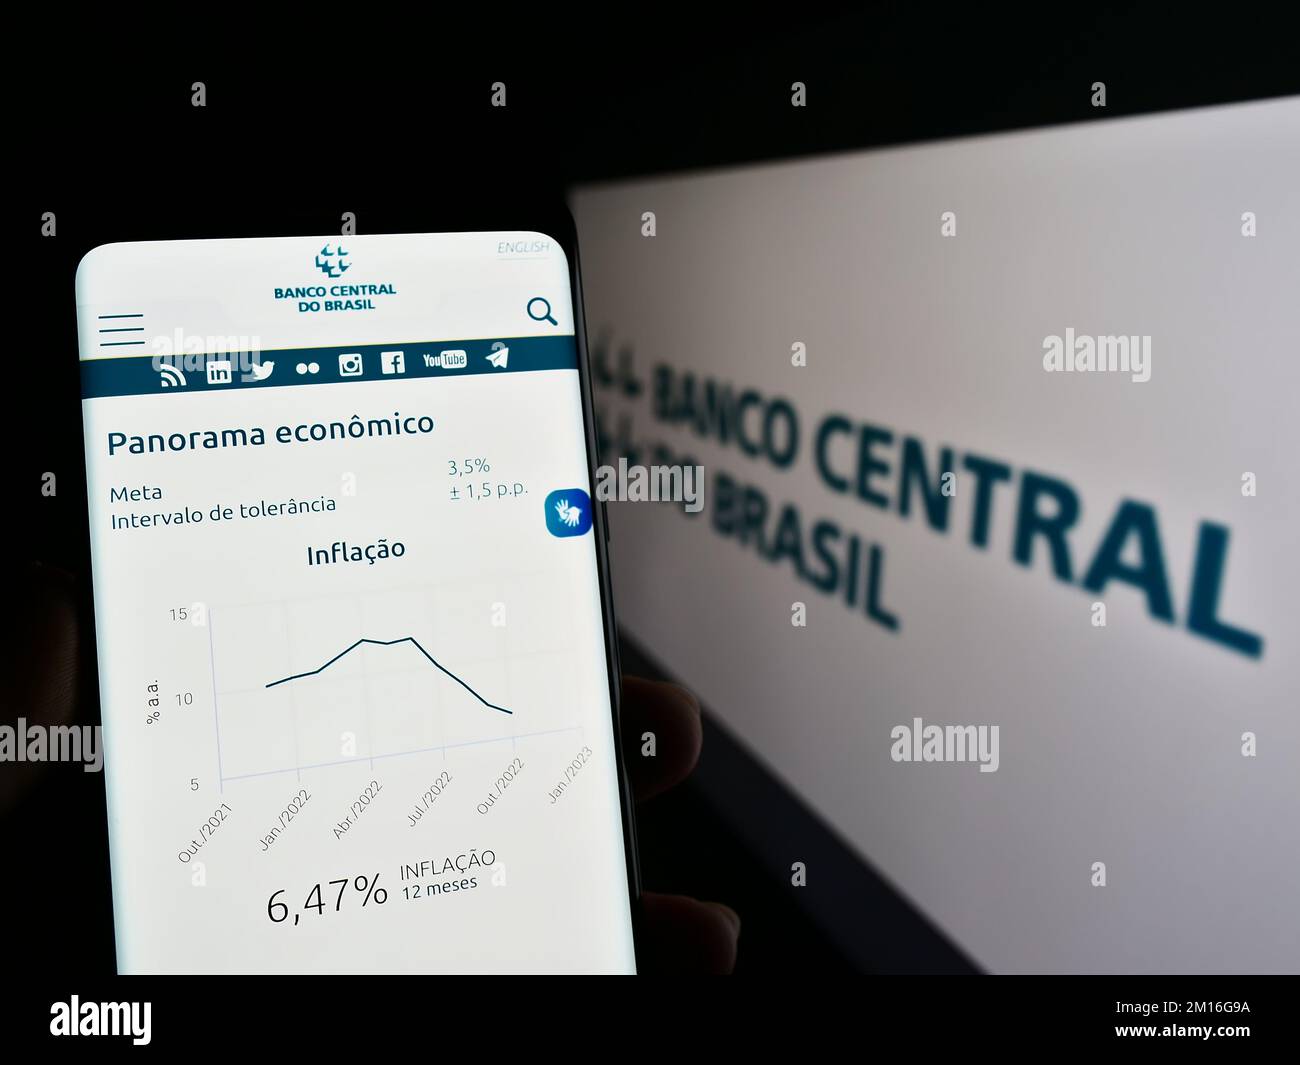 Persona con smartphone con página web del banco central Banco Central do Brasil (BCB) en pantalla delante del logotipo. Enfoque en el centro de la pantalla del teléfono. Foto de stock